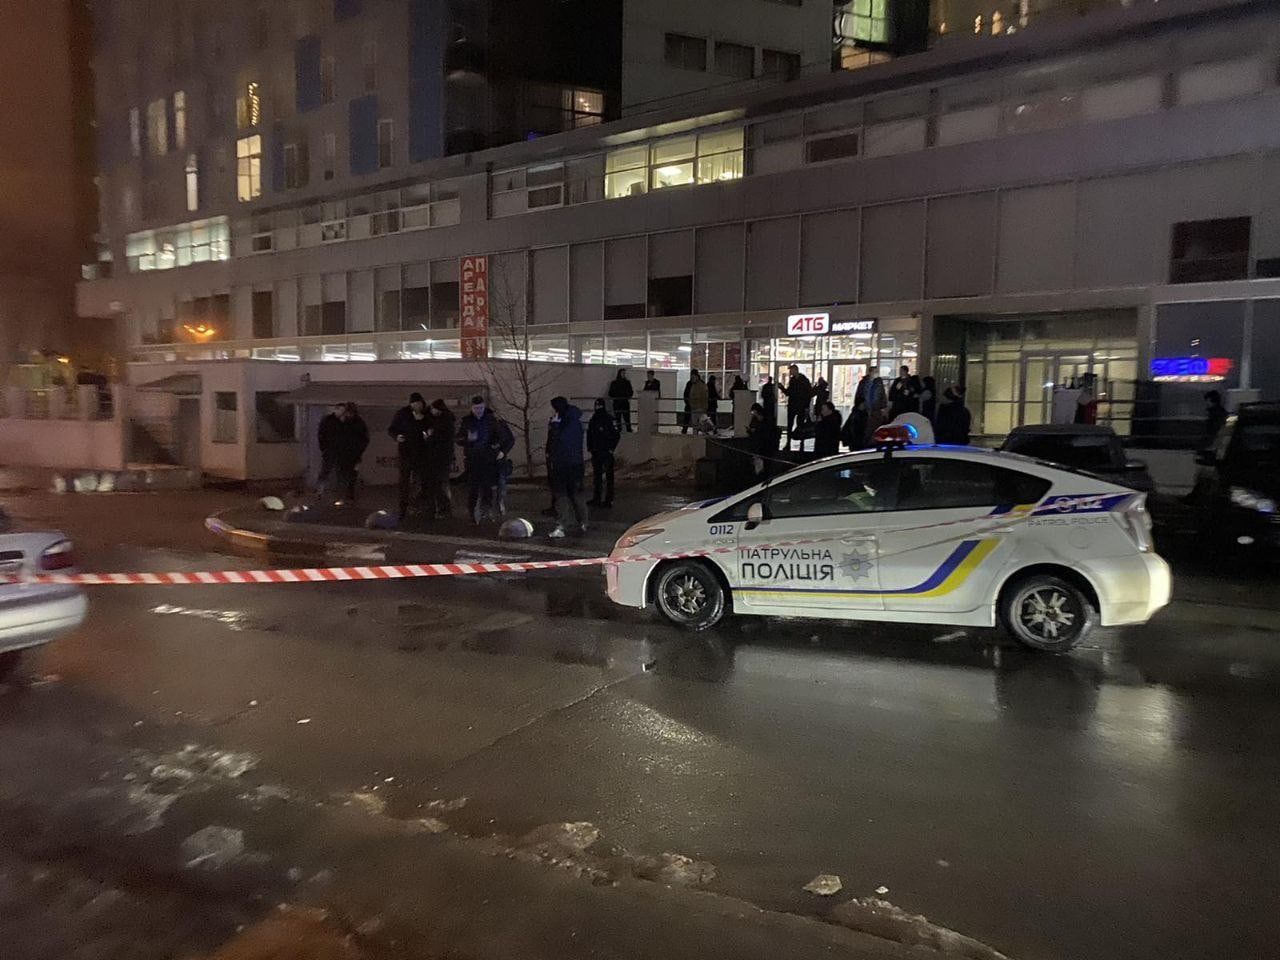 "Огнестрельное ранение в голову", - в Харькове застрелили бизнесмена, объявлен план "Сирена"